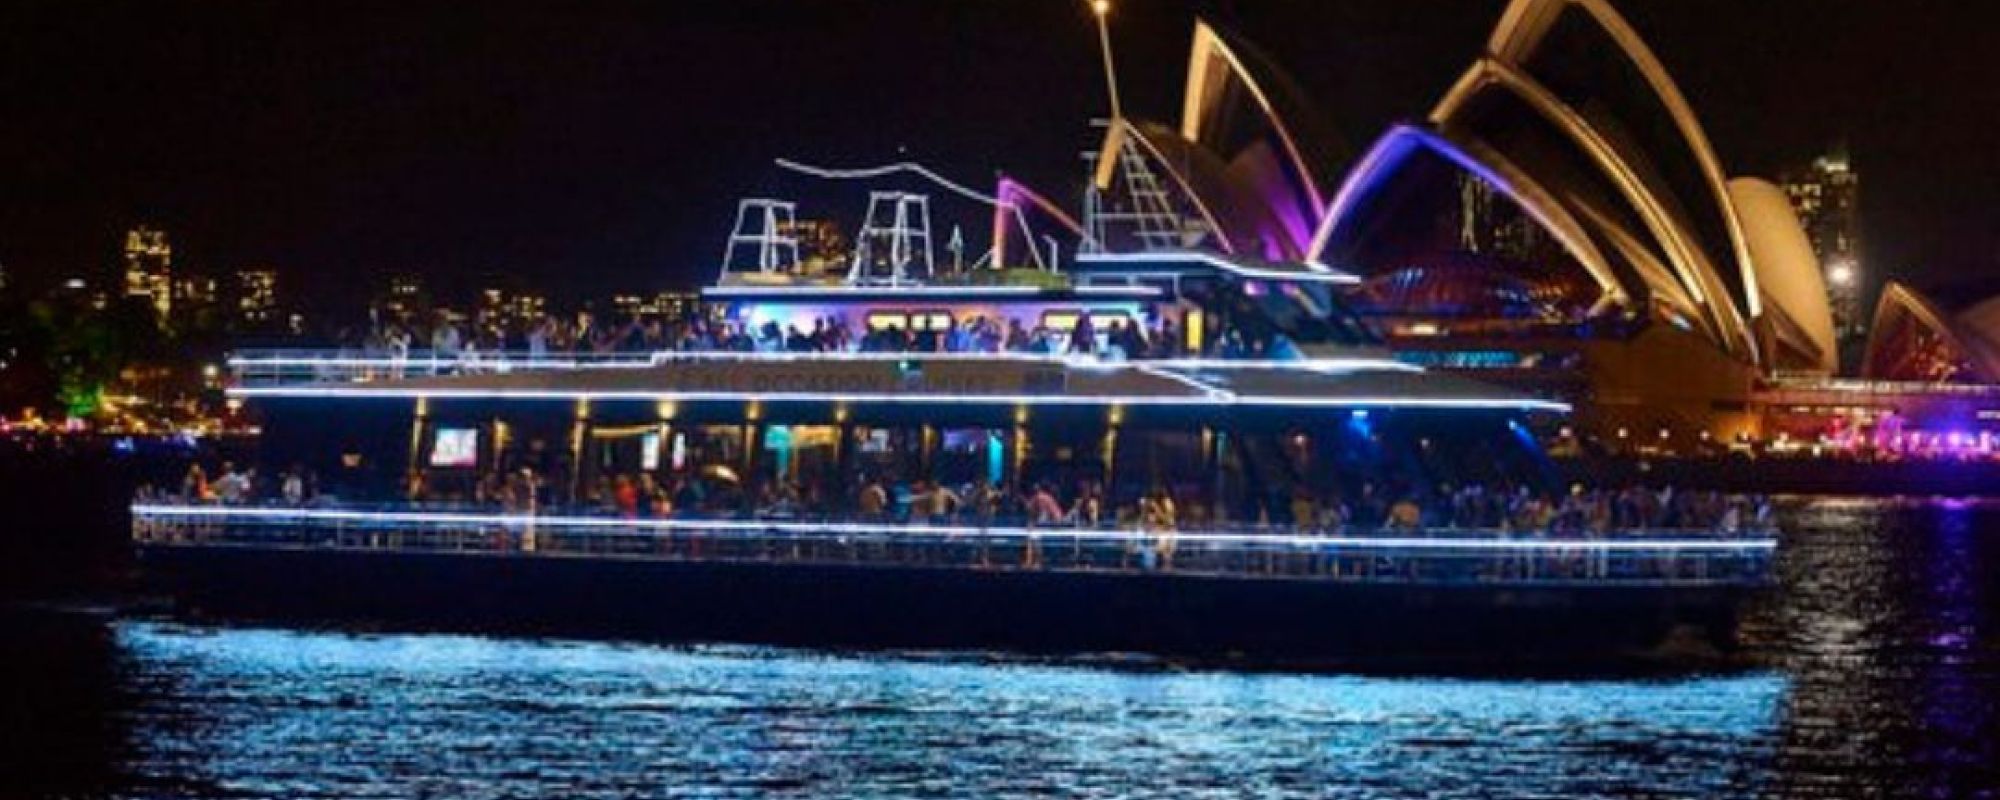 Bella Vista Wedding or Corporate Boat Hire Sydney